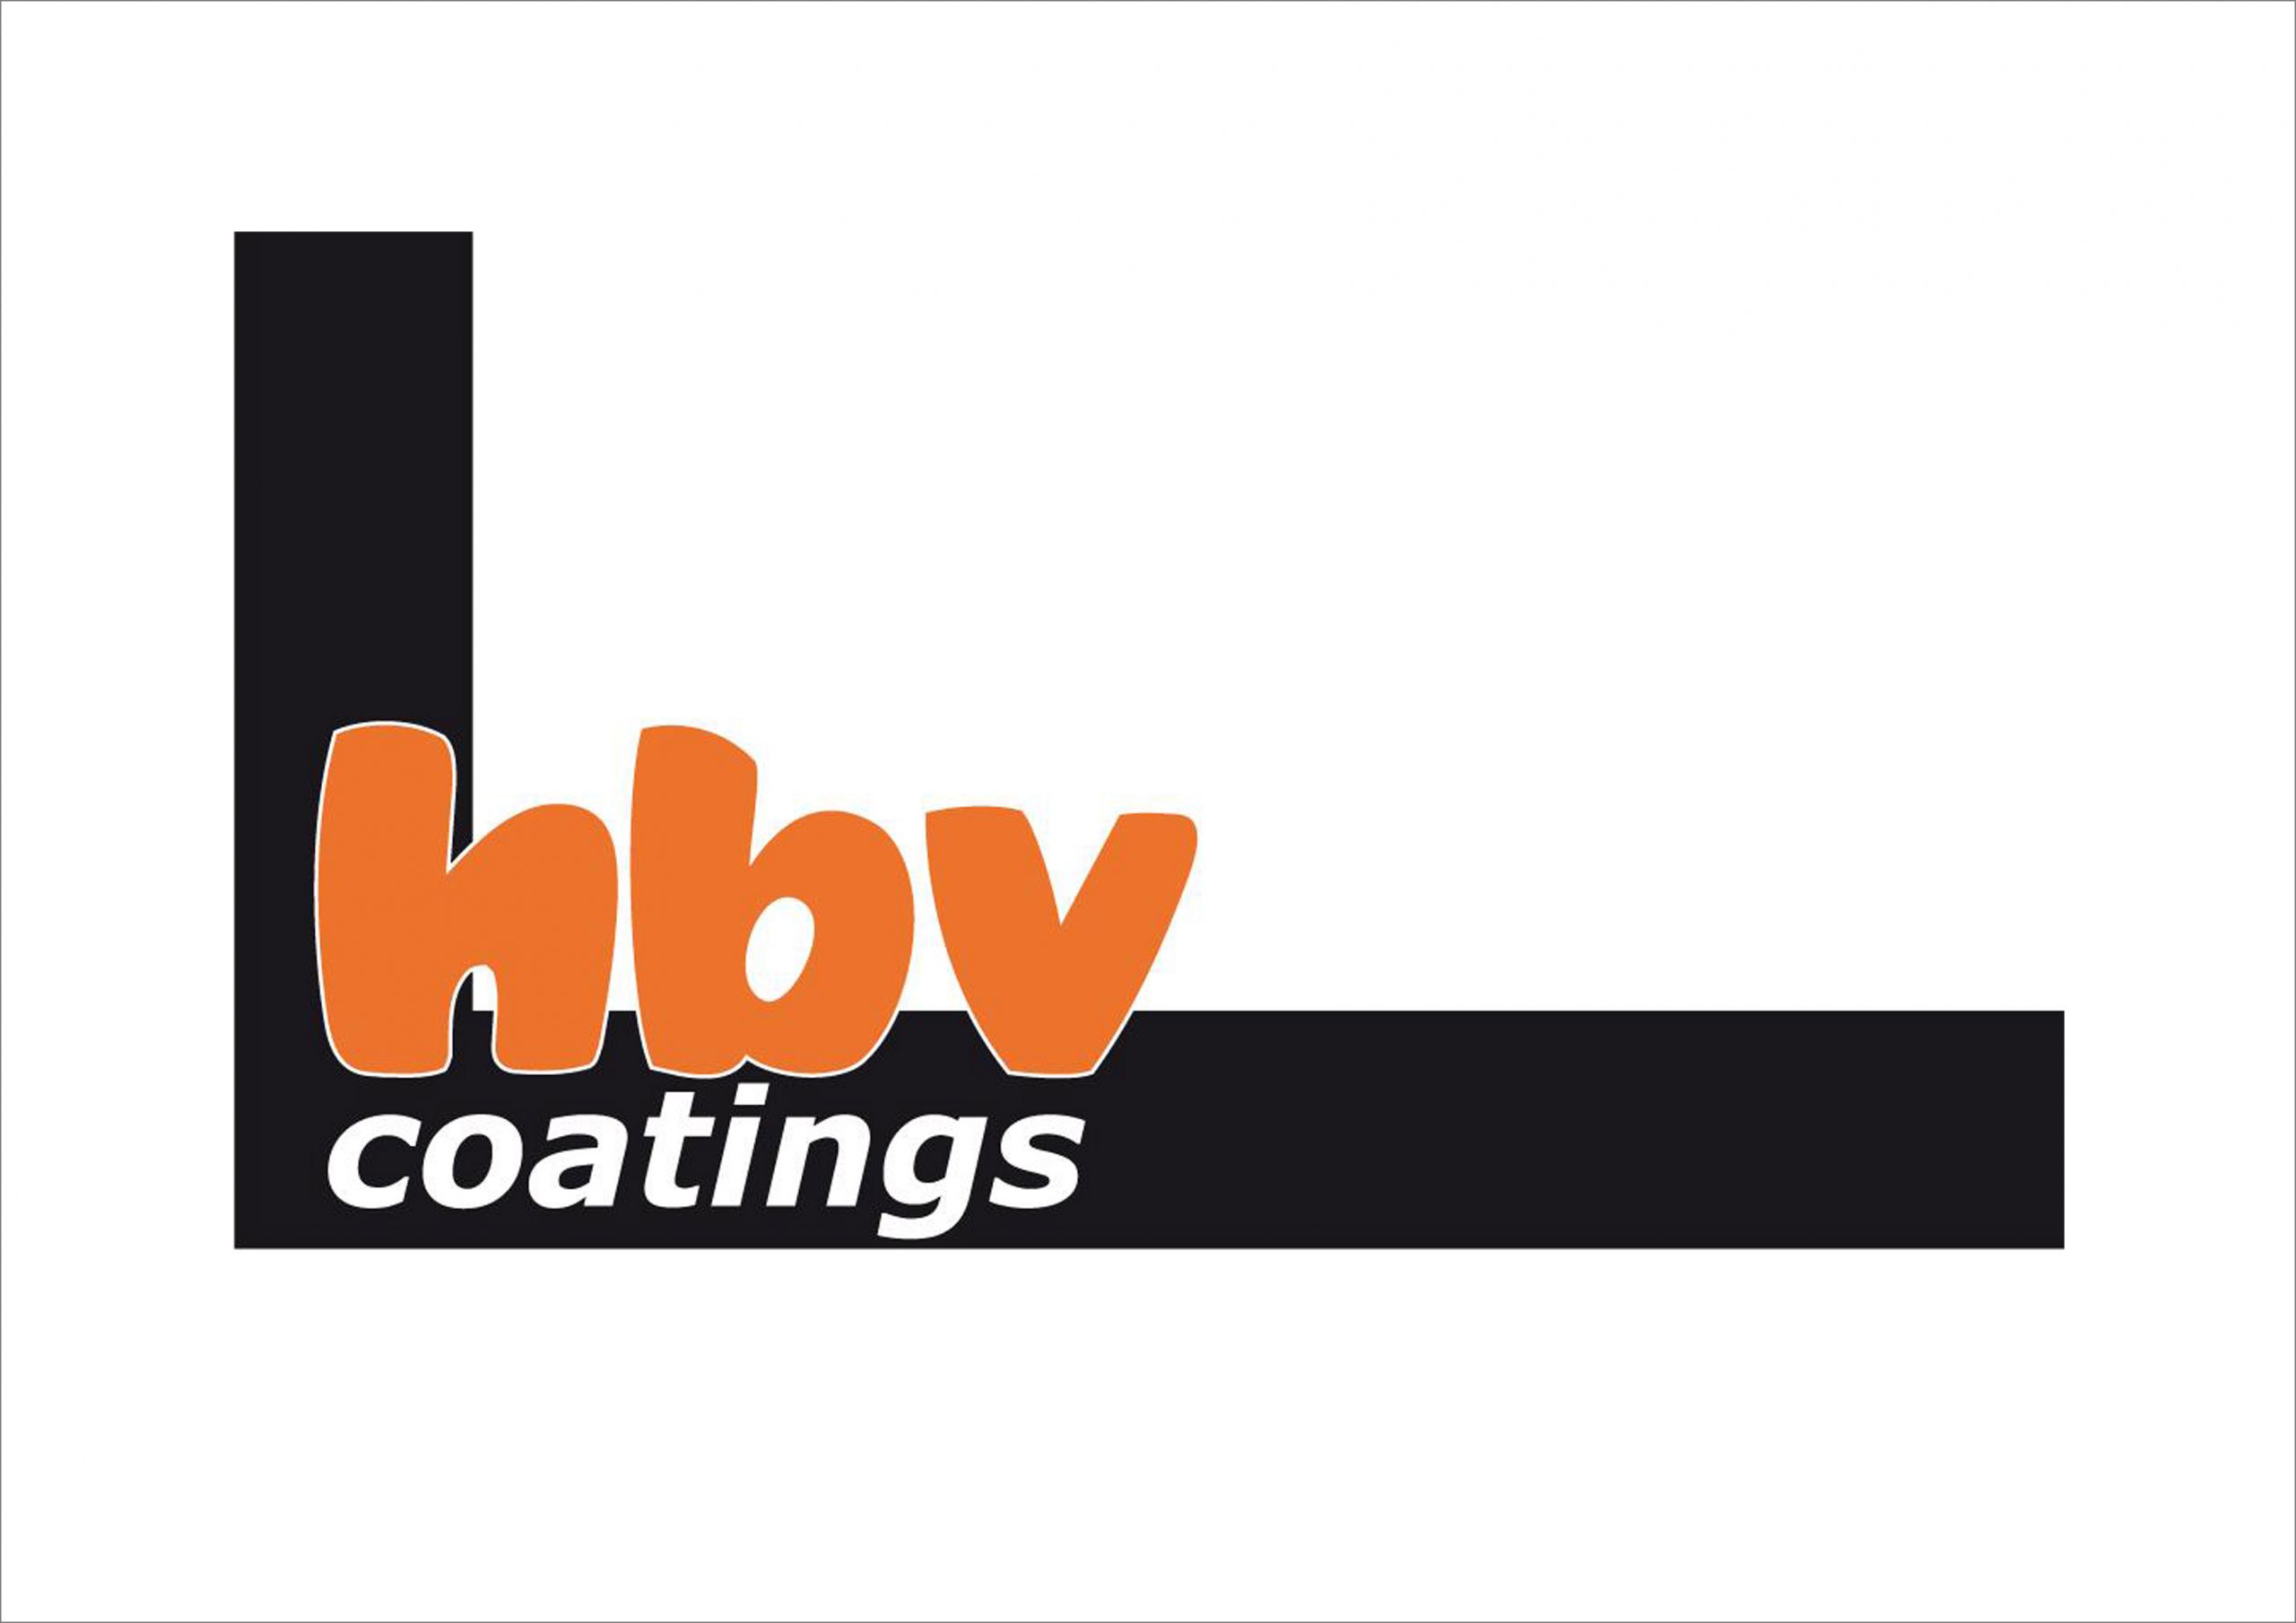 HBV coatings